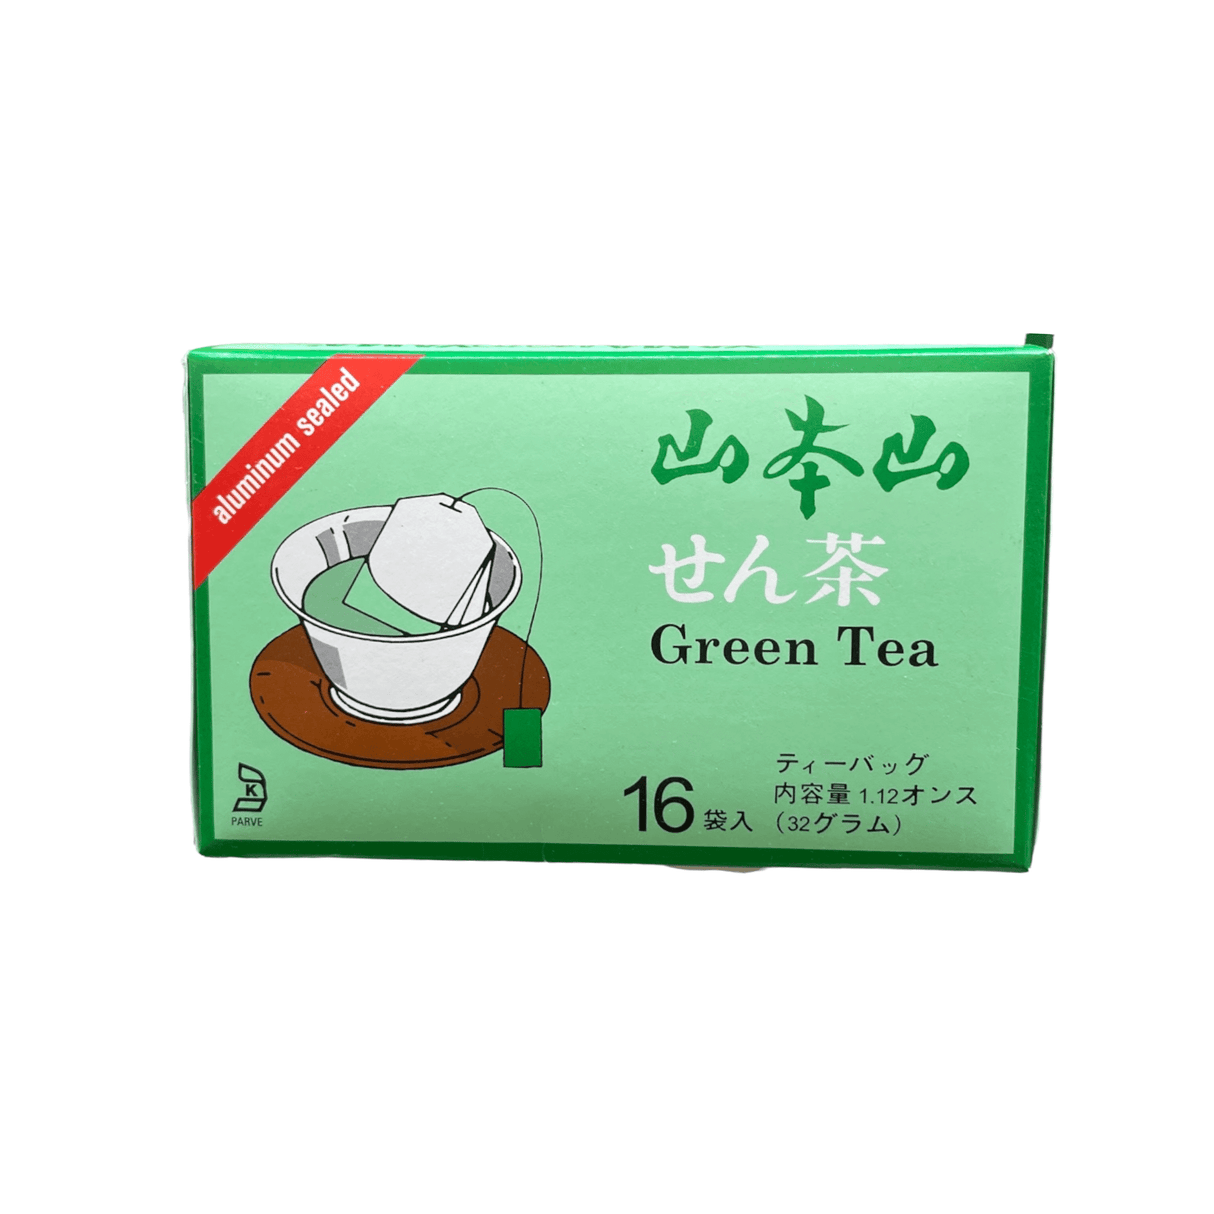 Yamamotoyama Green Tea